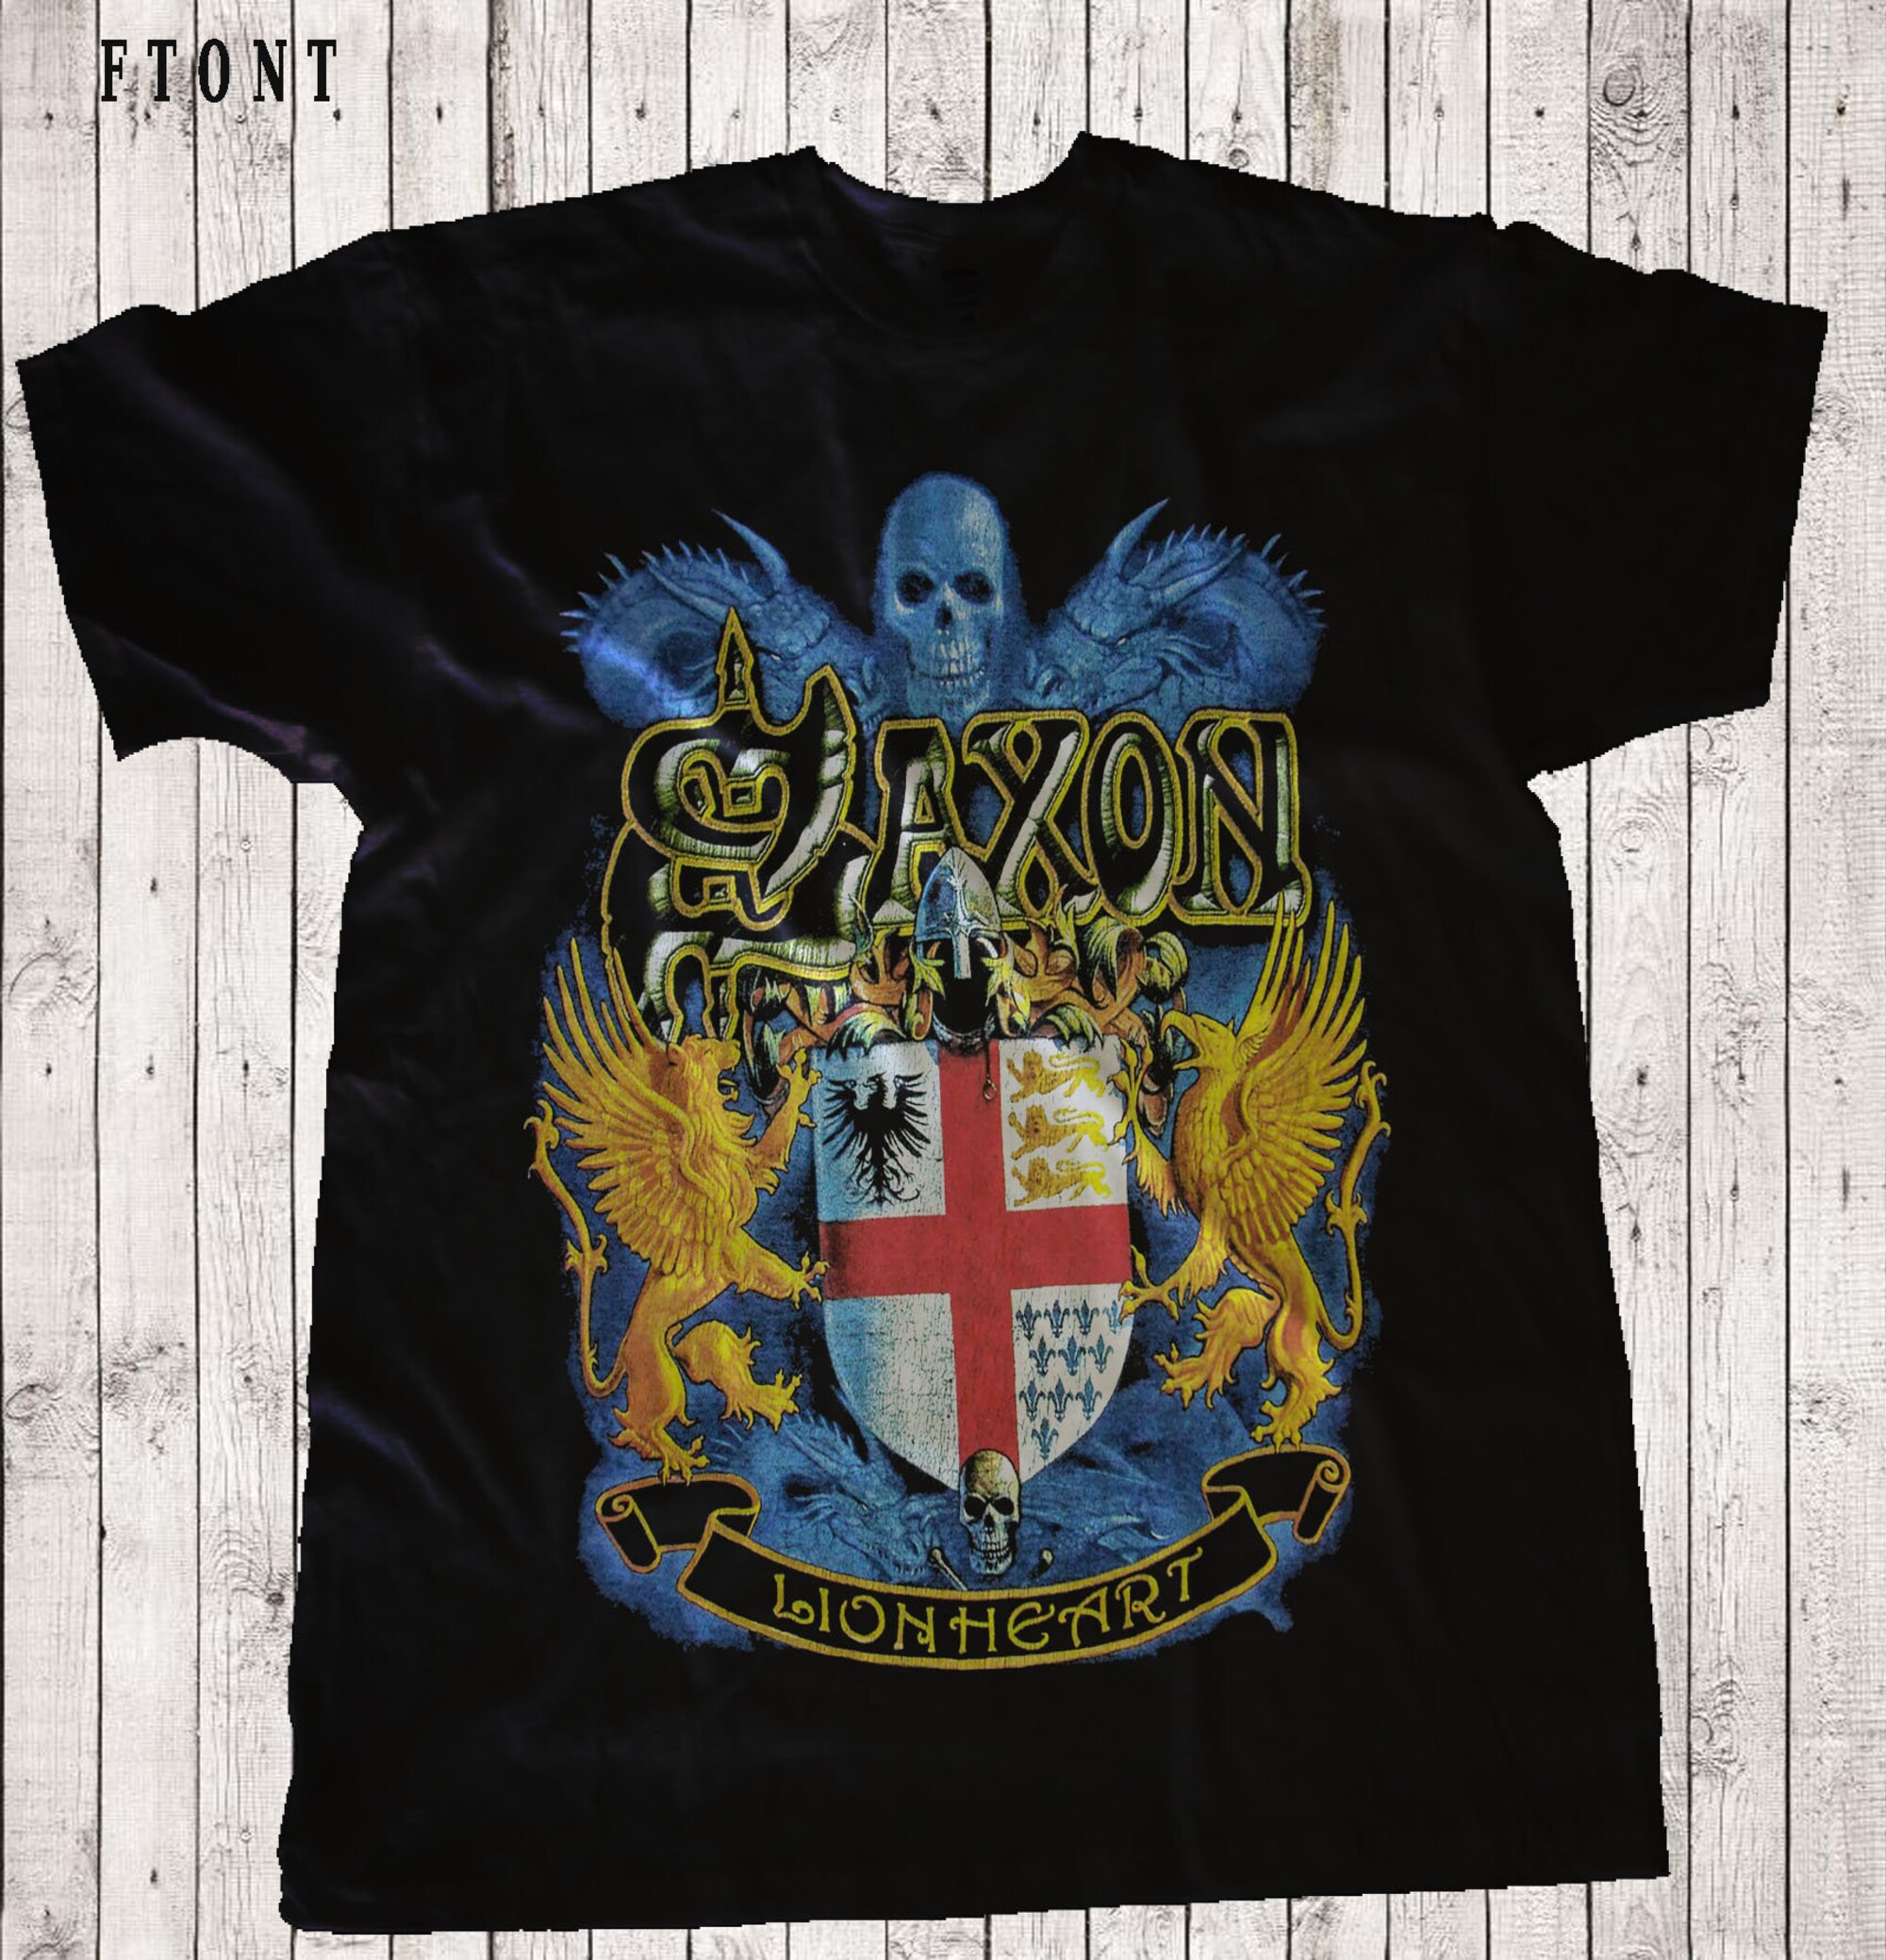 SAXON - Lionheart T-shirt